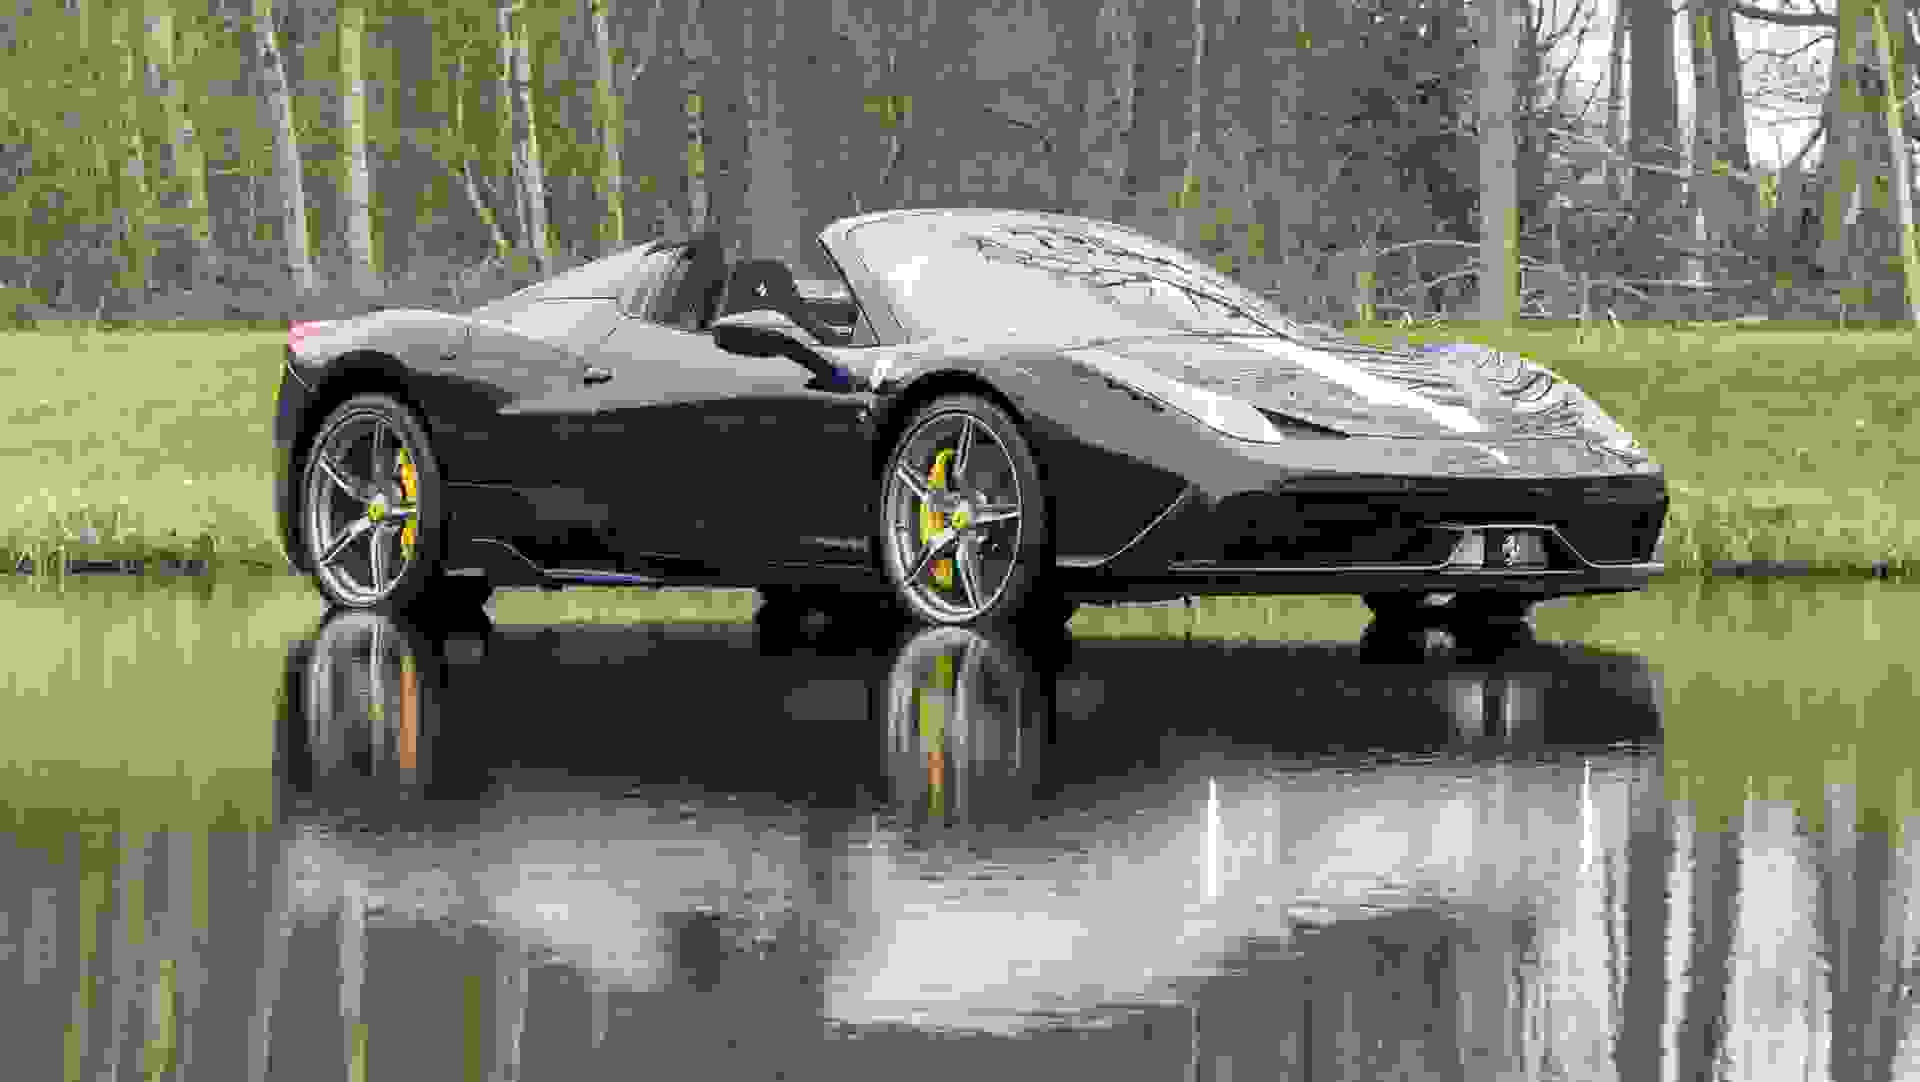 Ferrari 458 SPECIALE Photo a454597b-9c88-4b3d-a1d9-8daf85bf2dc3.jpg